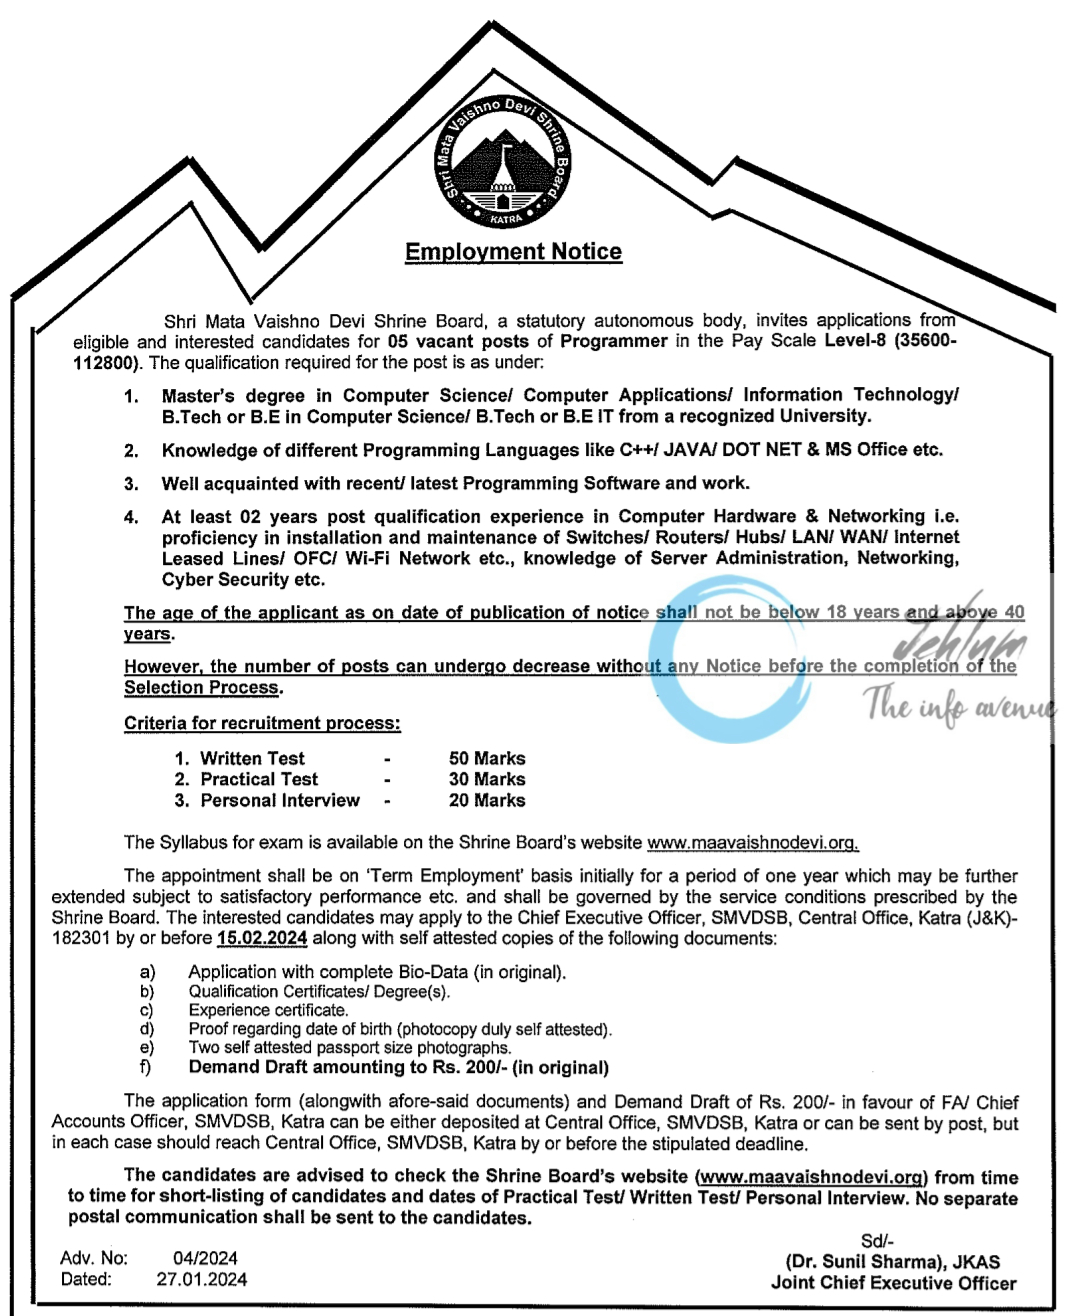 Shri Mata Vaishno Devi Shrine Board SMVDSB Katra Employment Advt Notice No 04 of 2024